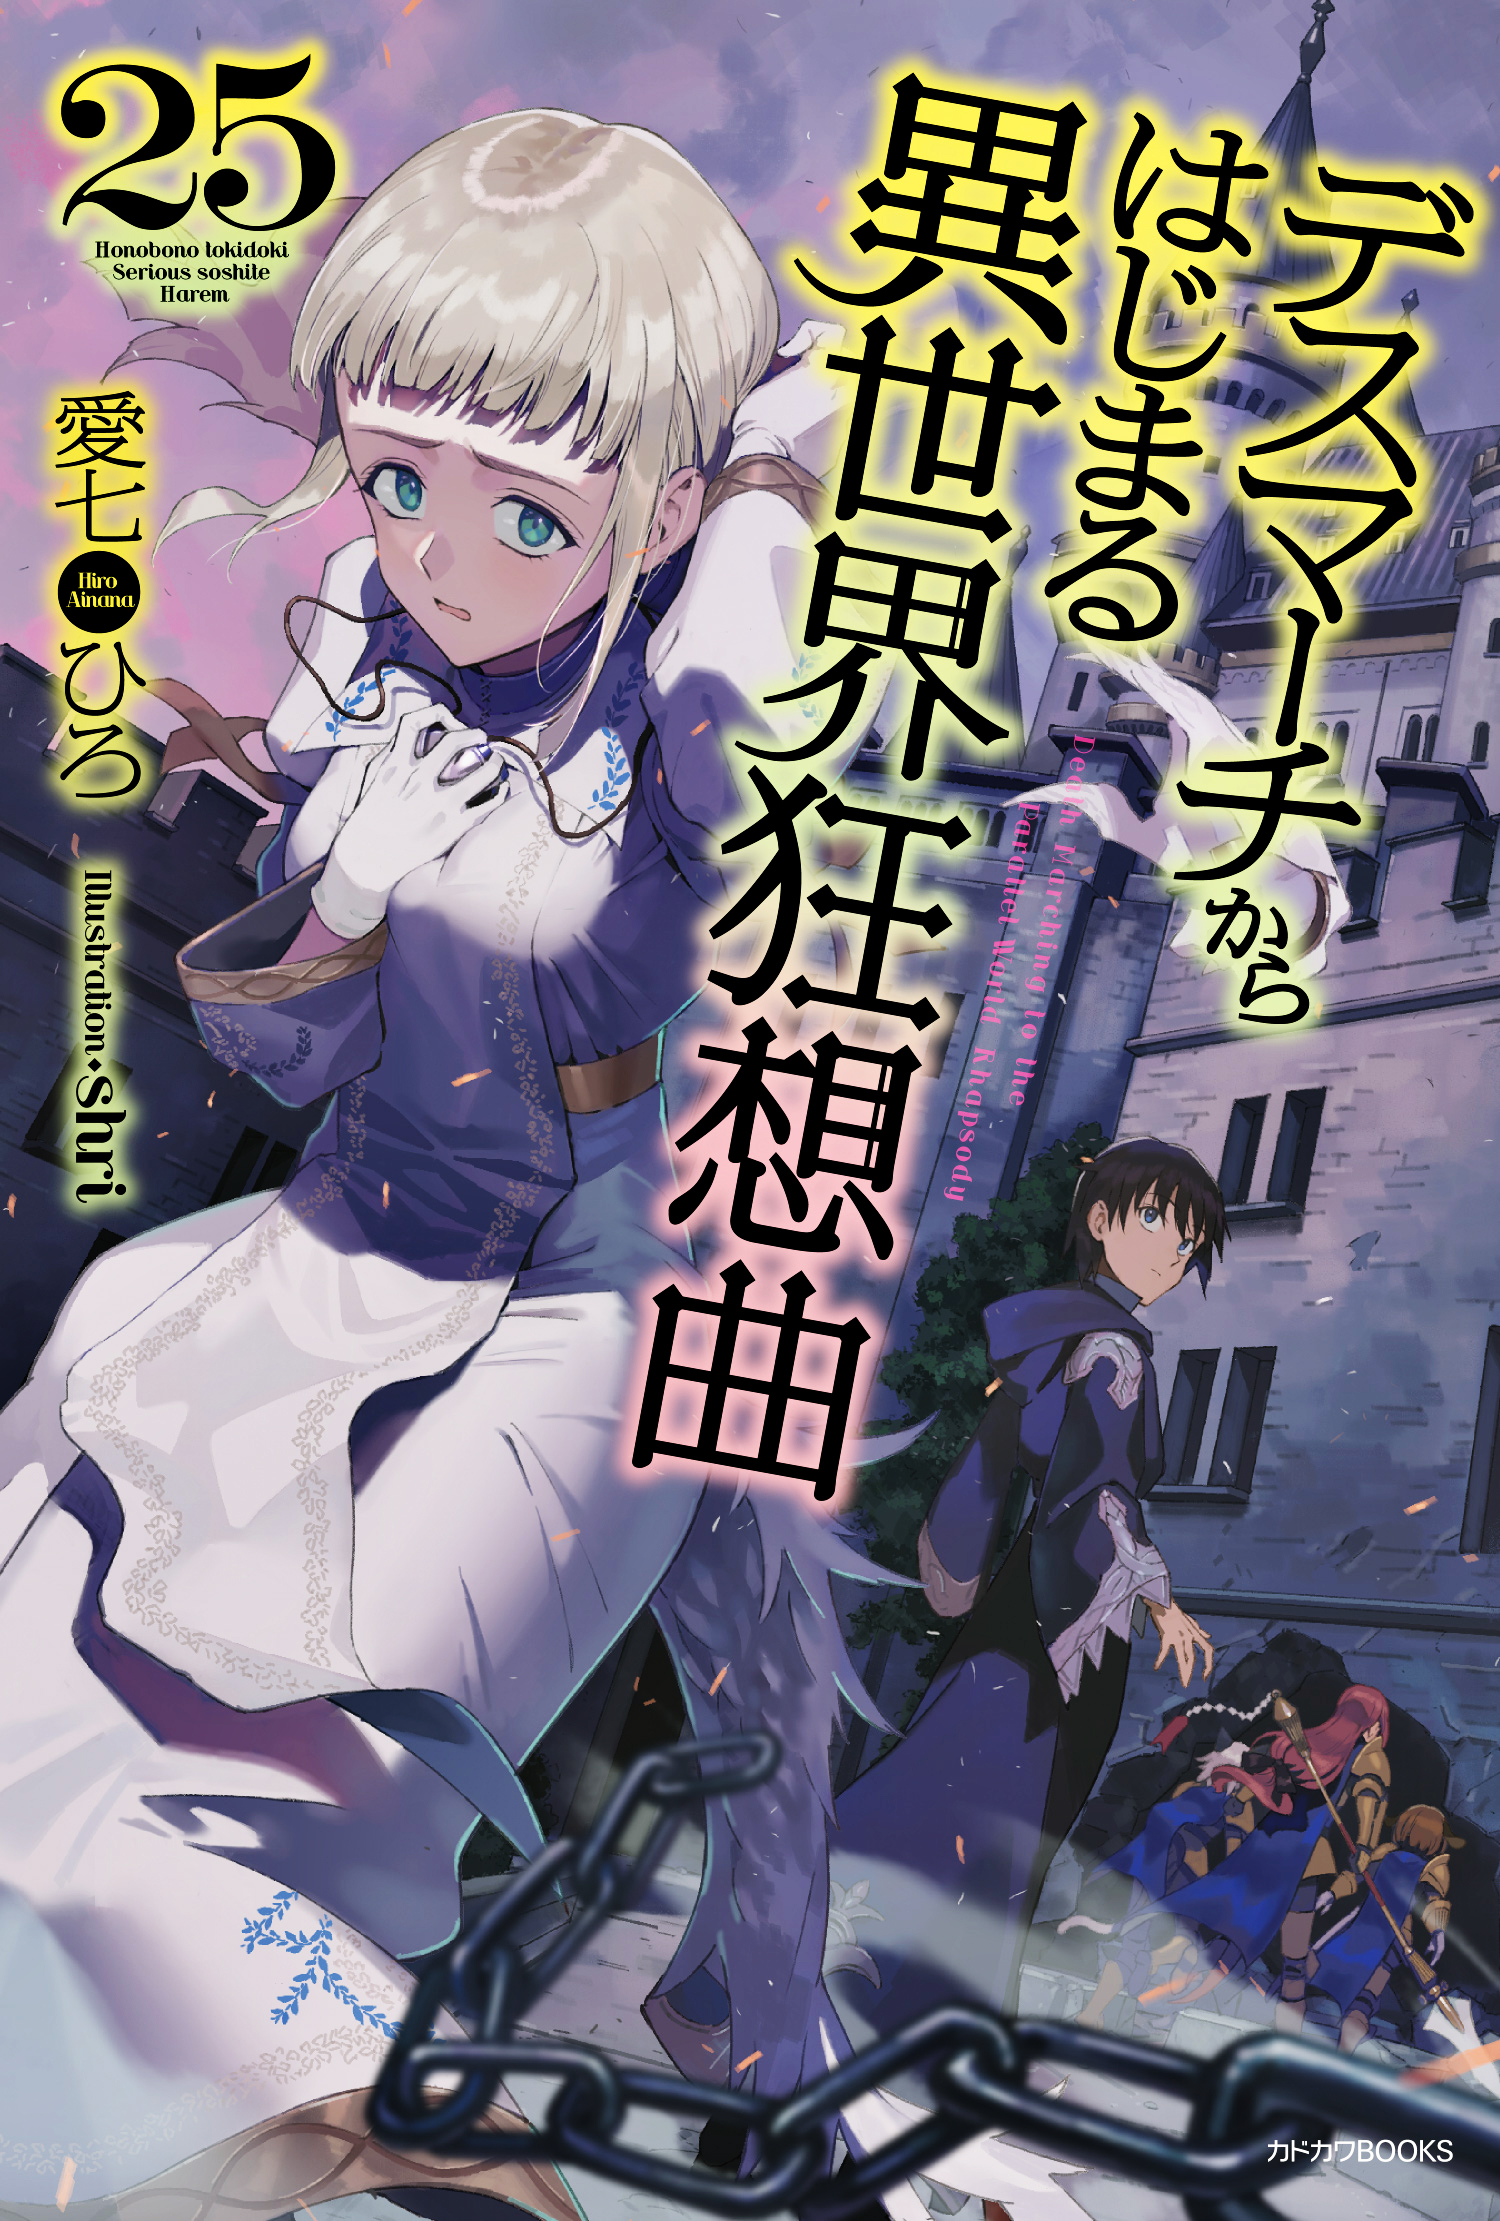 LN] Hoshizora no Shita, Kimi no koe Dake wo Dakishimeru - Anime X Novel